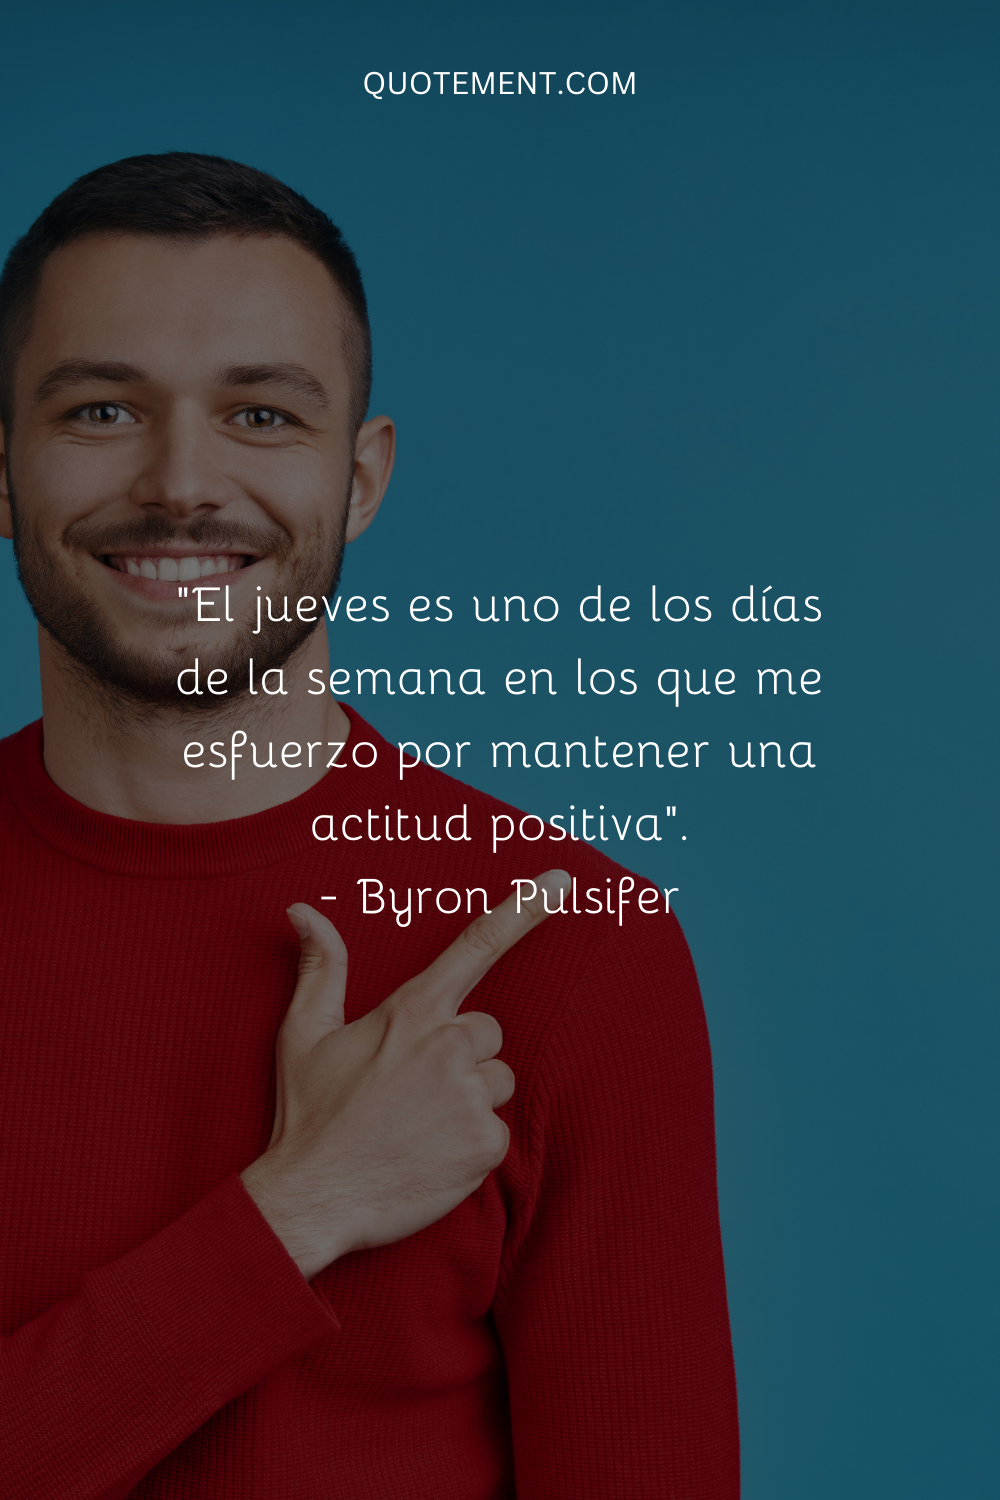 "El jueves es uno de los días de la semana en que me esfuerzo por mantener una actitud positiva". - Byron Pulsifer